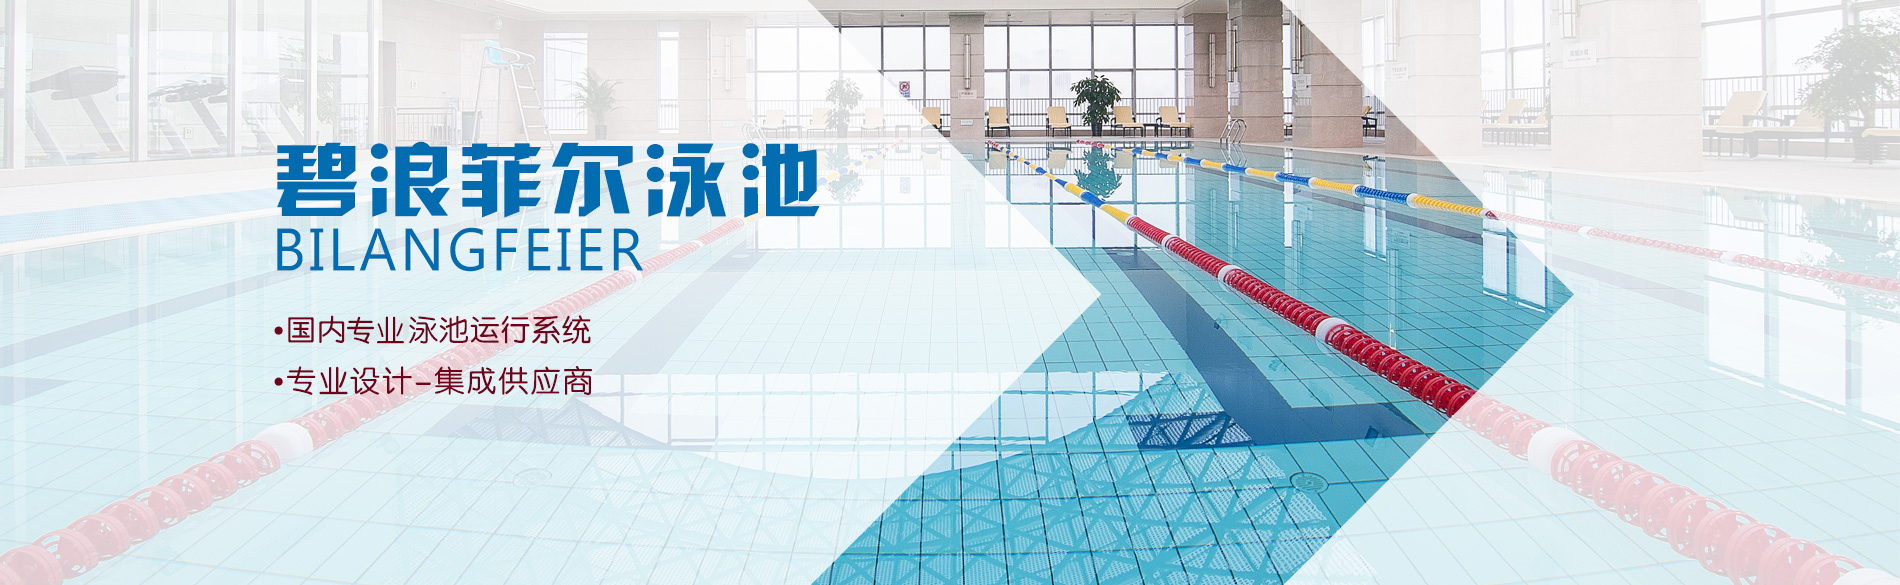 天津碧浪菲尔泳池销售有限公司